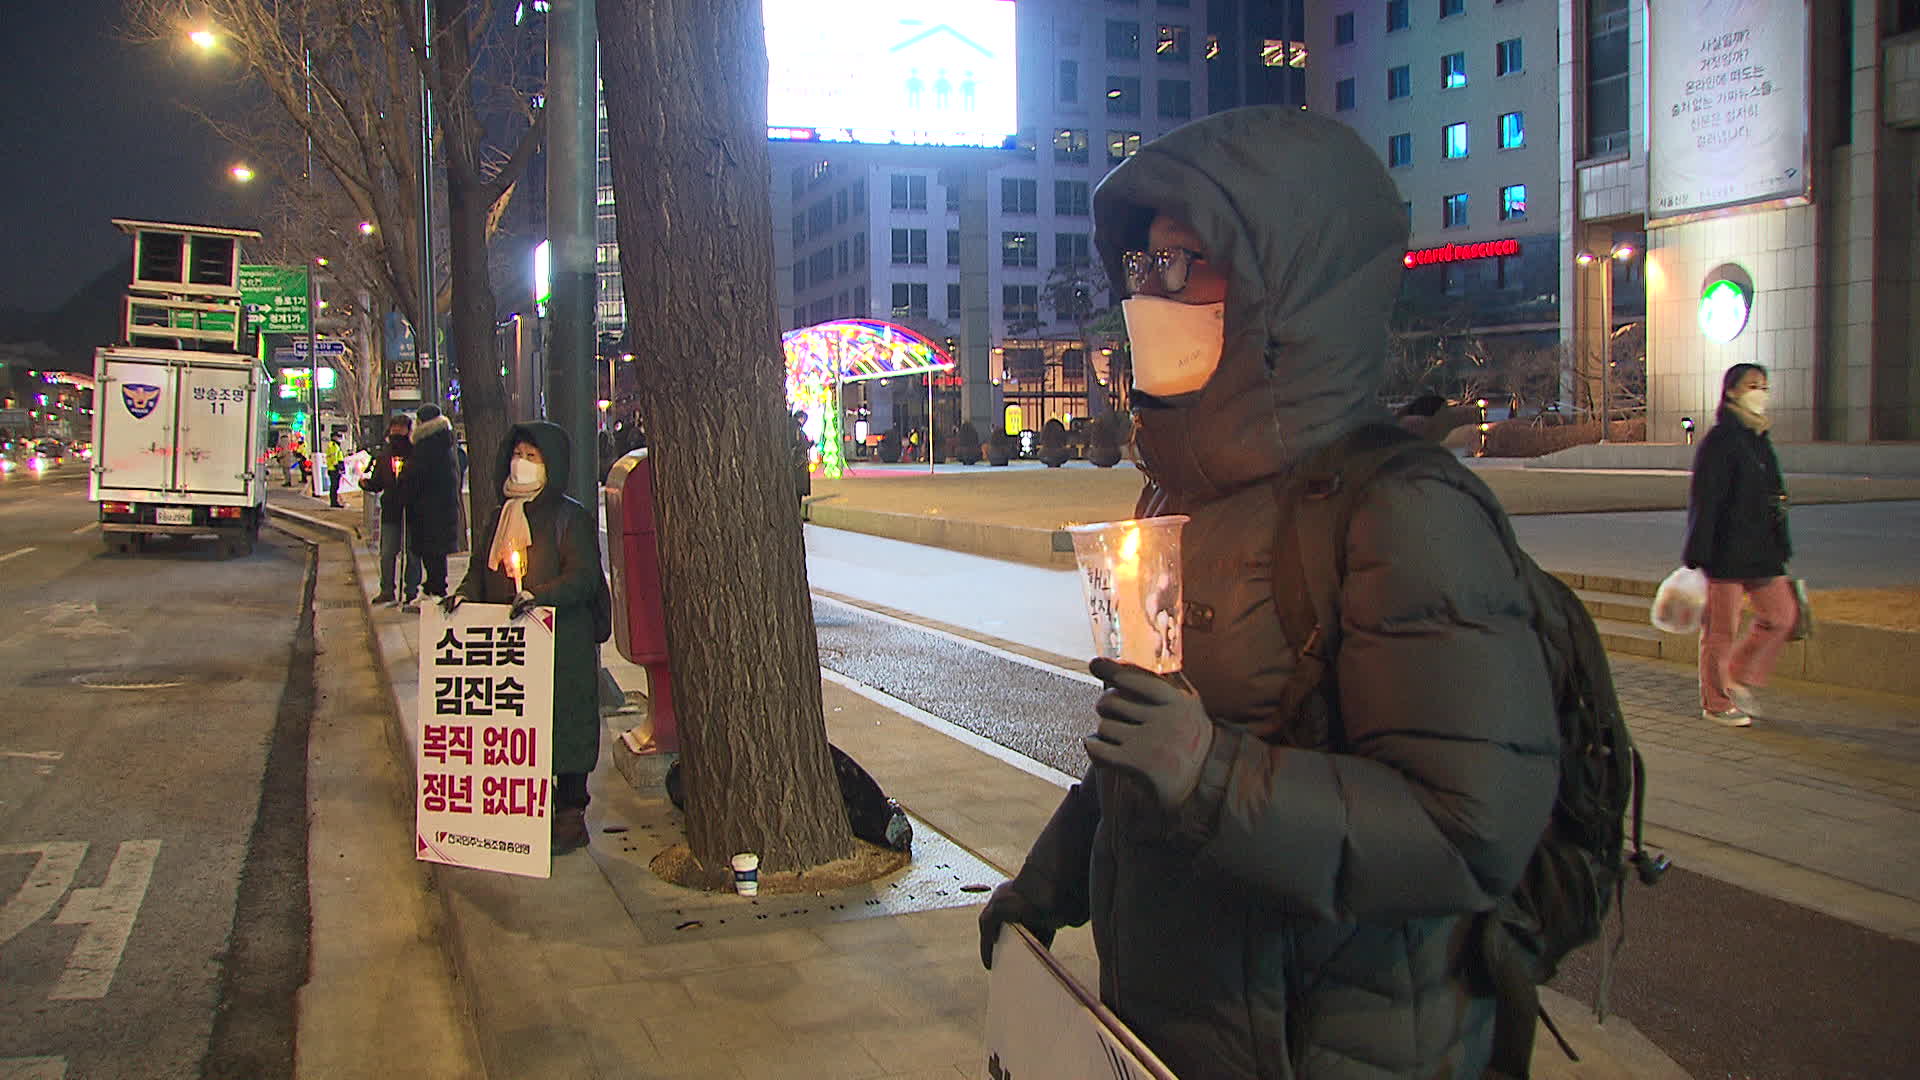  지난 주말 서울 광화문 일대에서 ‘김진숙 복직 촉구’ 단체 1인 시위가 열렸다. 